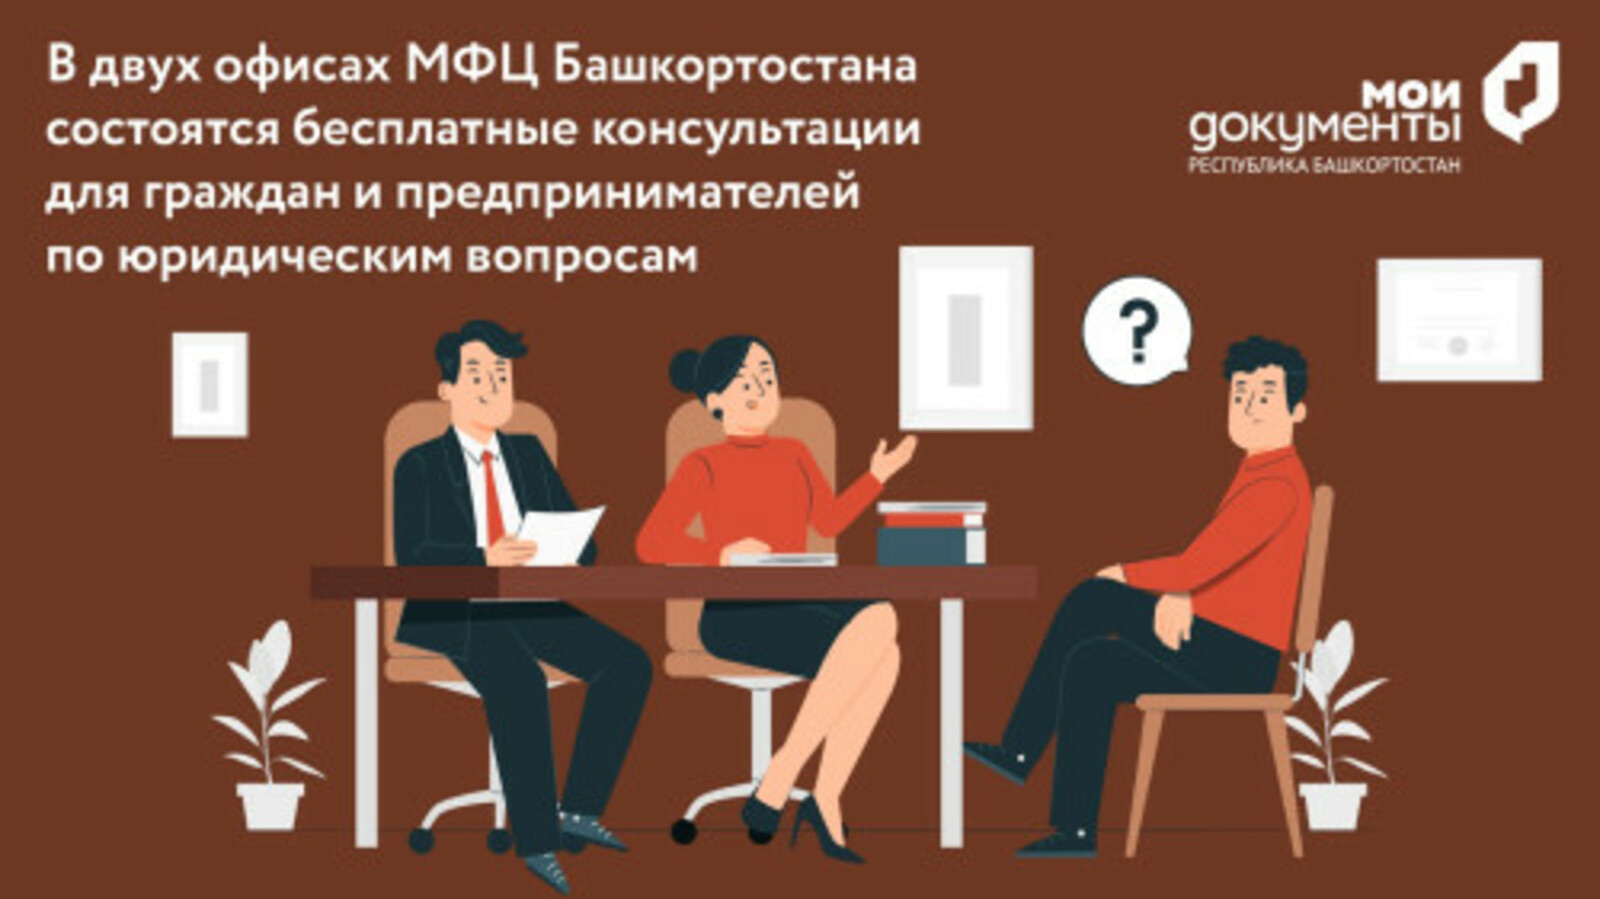 В двух офисах МФЦ Башкортостана состоятся бесплатные консультации для граждан и предпринимателей по юридическим вопросам